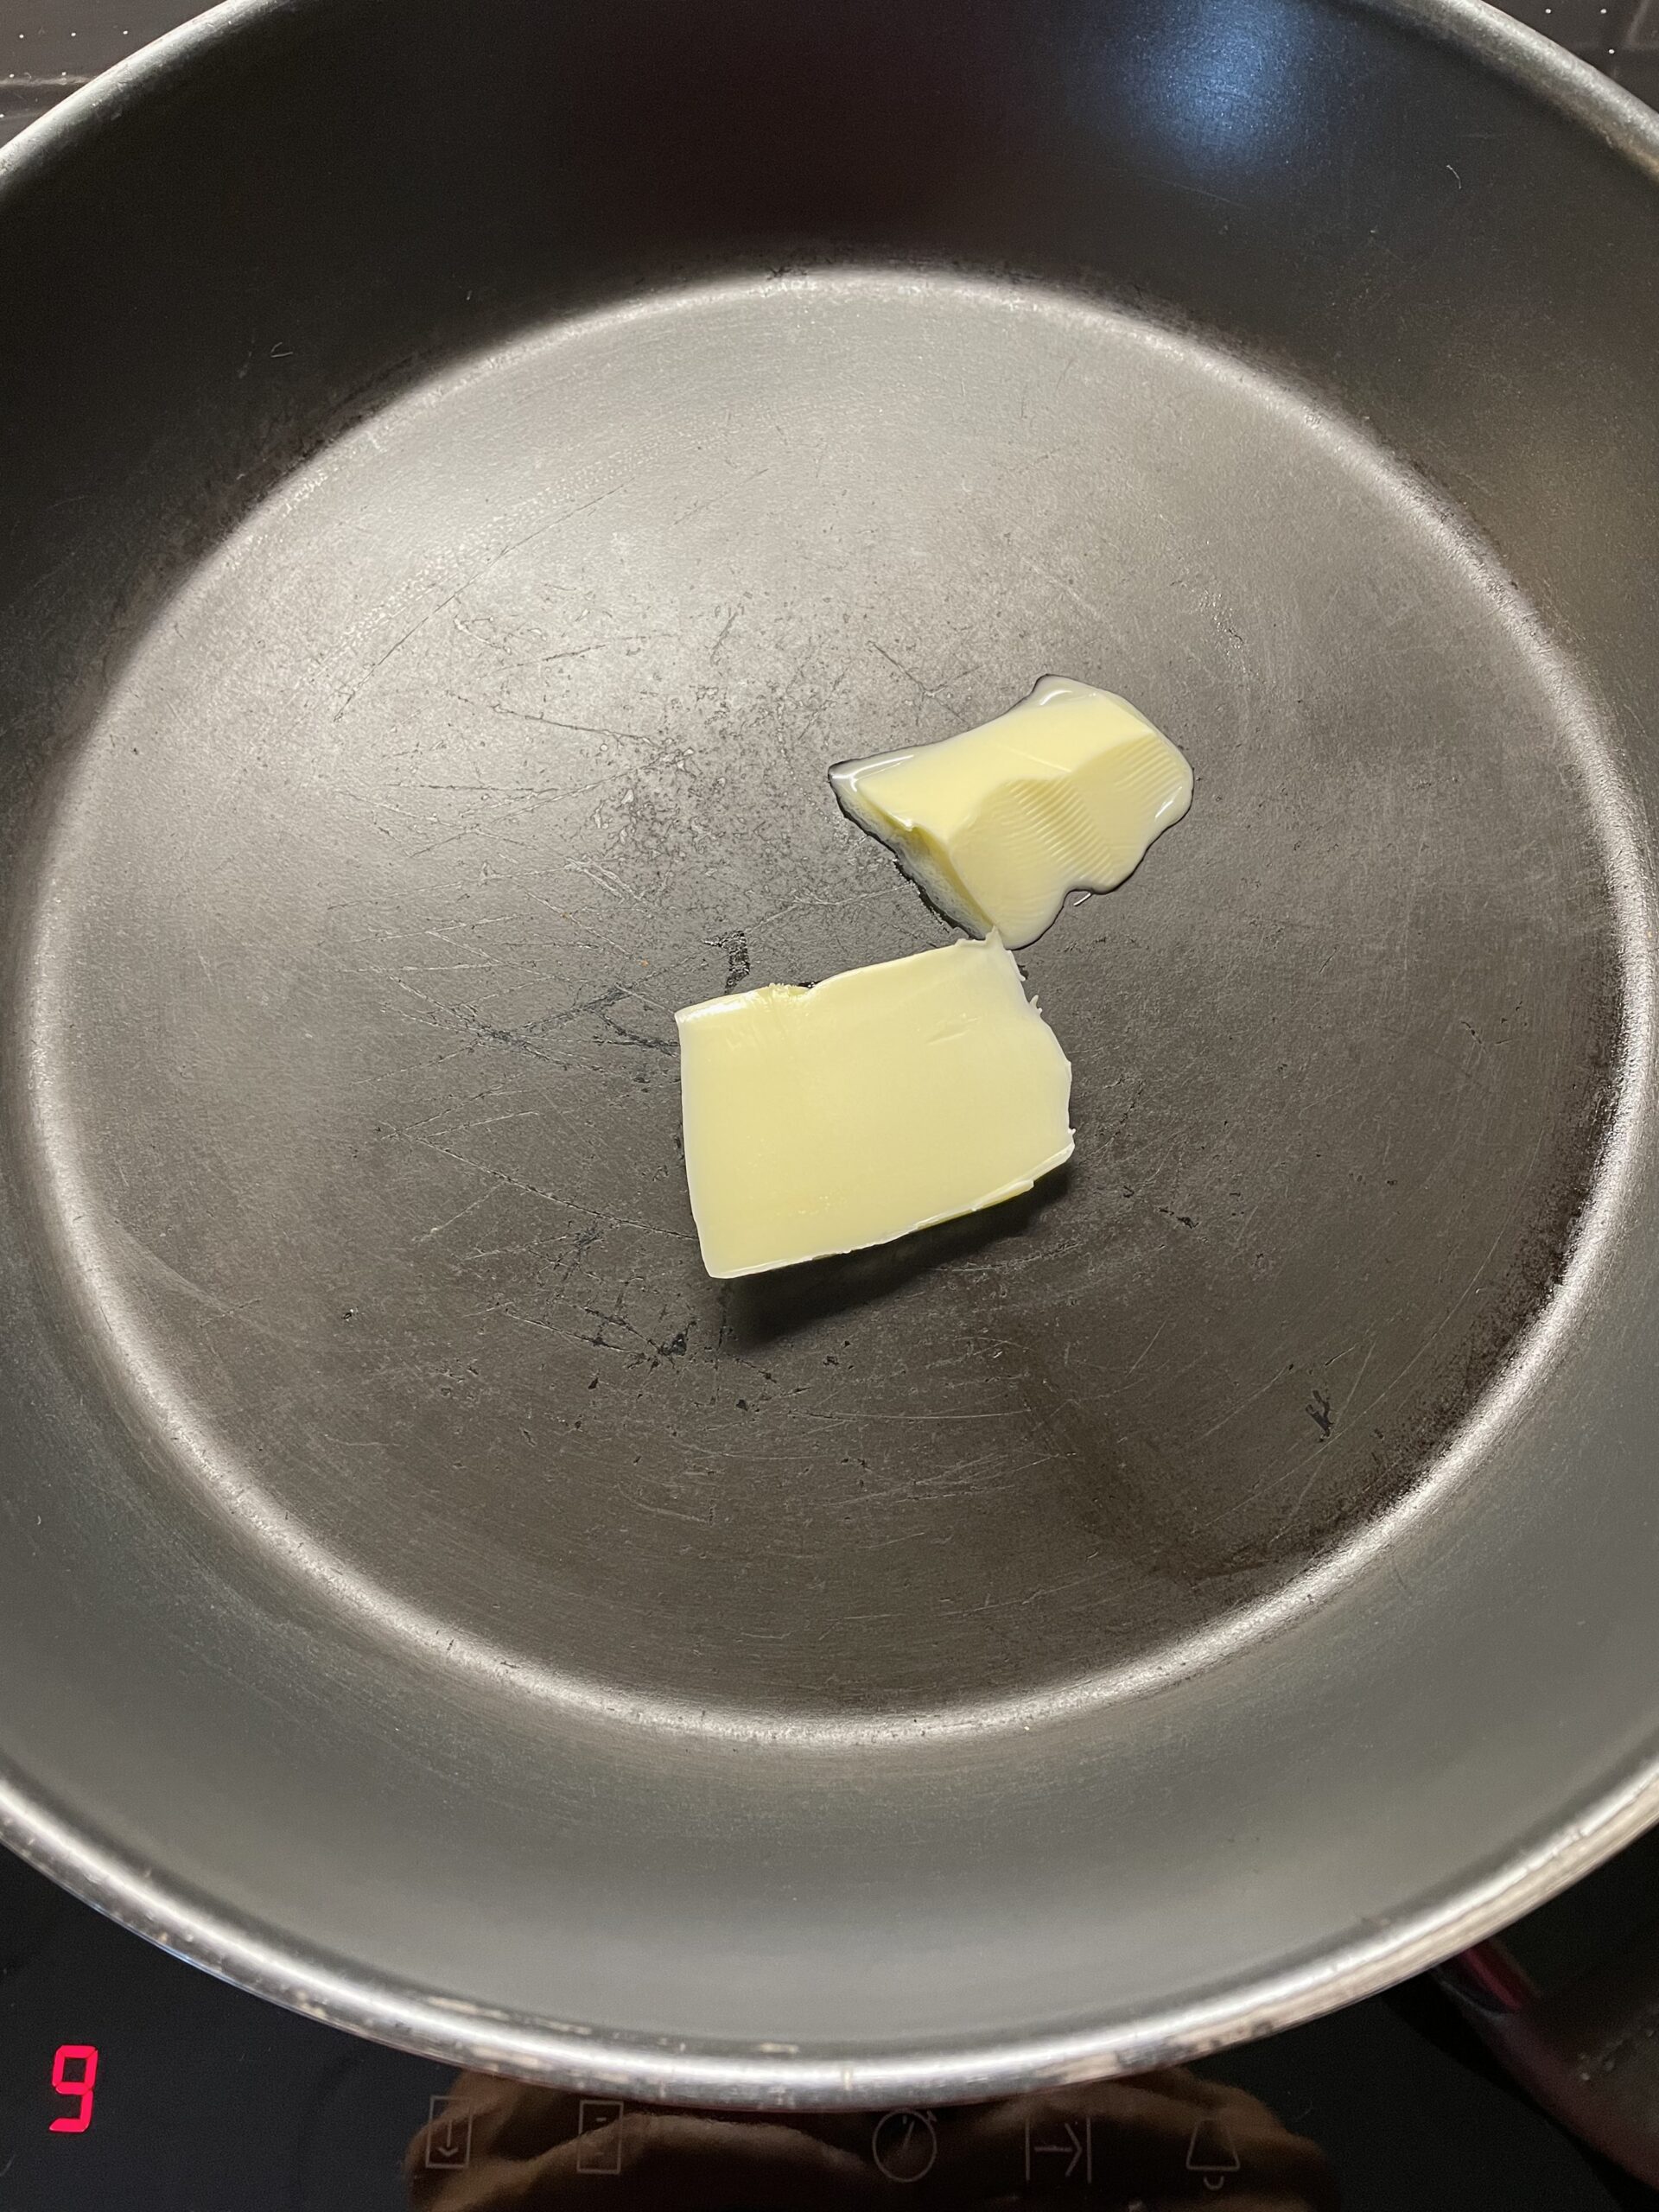 Bild zum Schritt 8 für das Bastel- und DIY-Abenteuer für Kinder: 'Jetzt gebt ihr ein Stück Butter in eine Bratpfanne. ...'